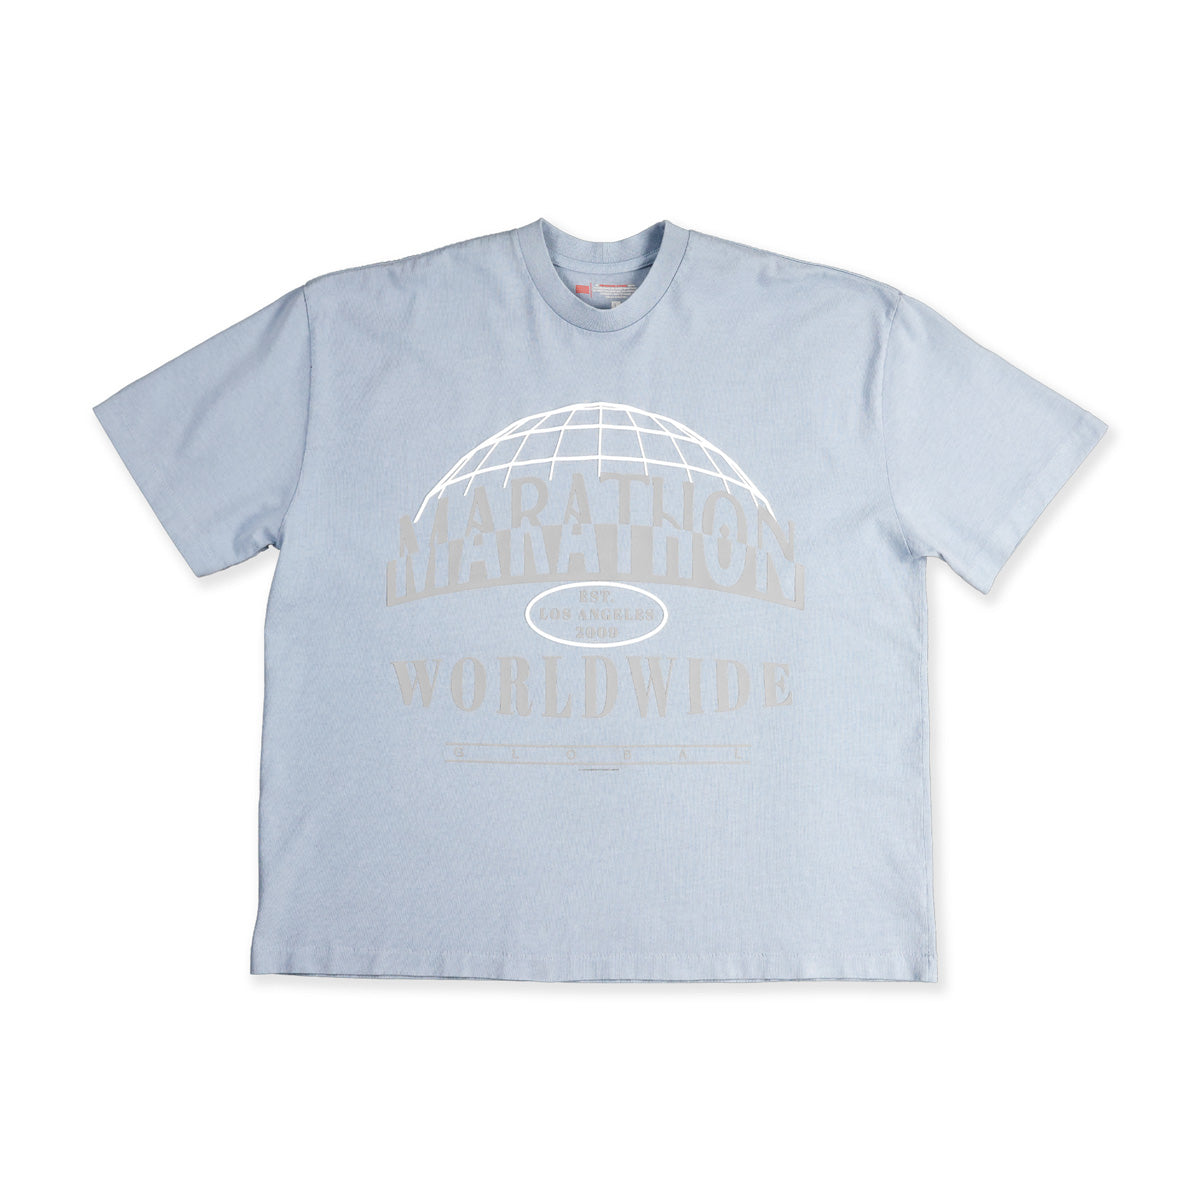 Marathon Worldwide T-Shirt - Light Blue - Front